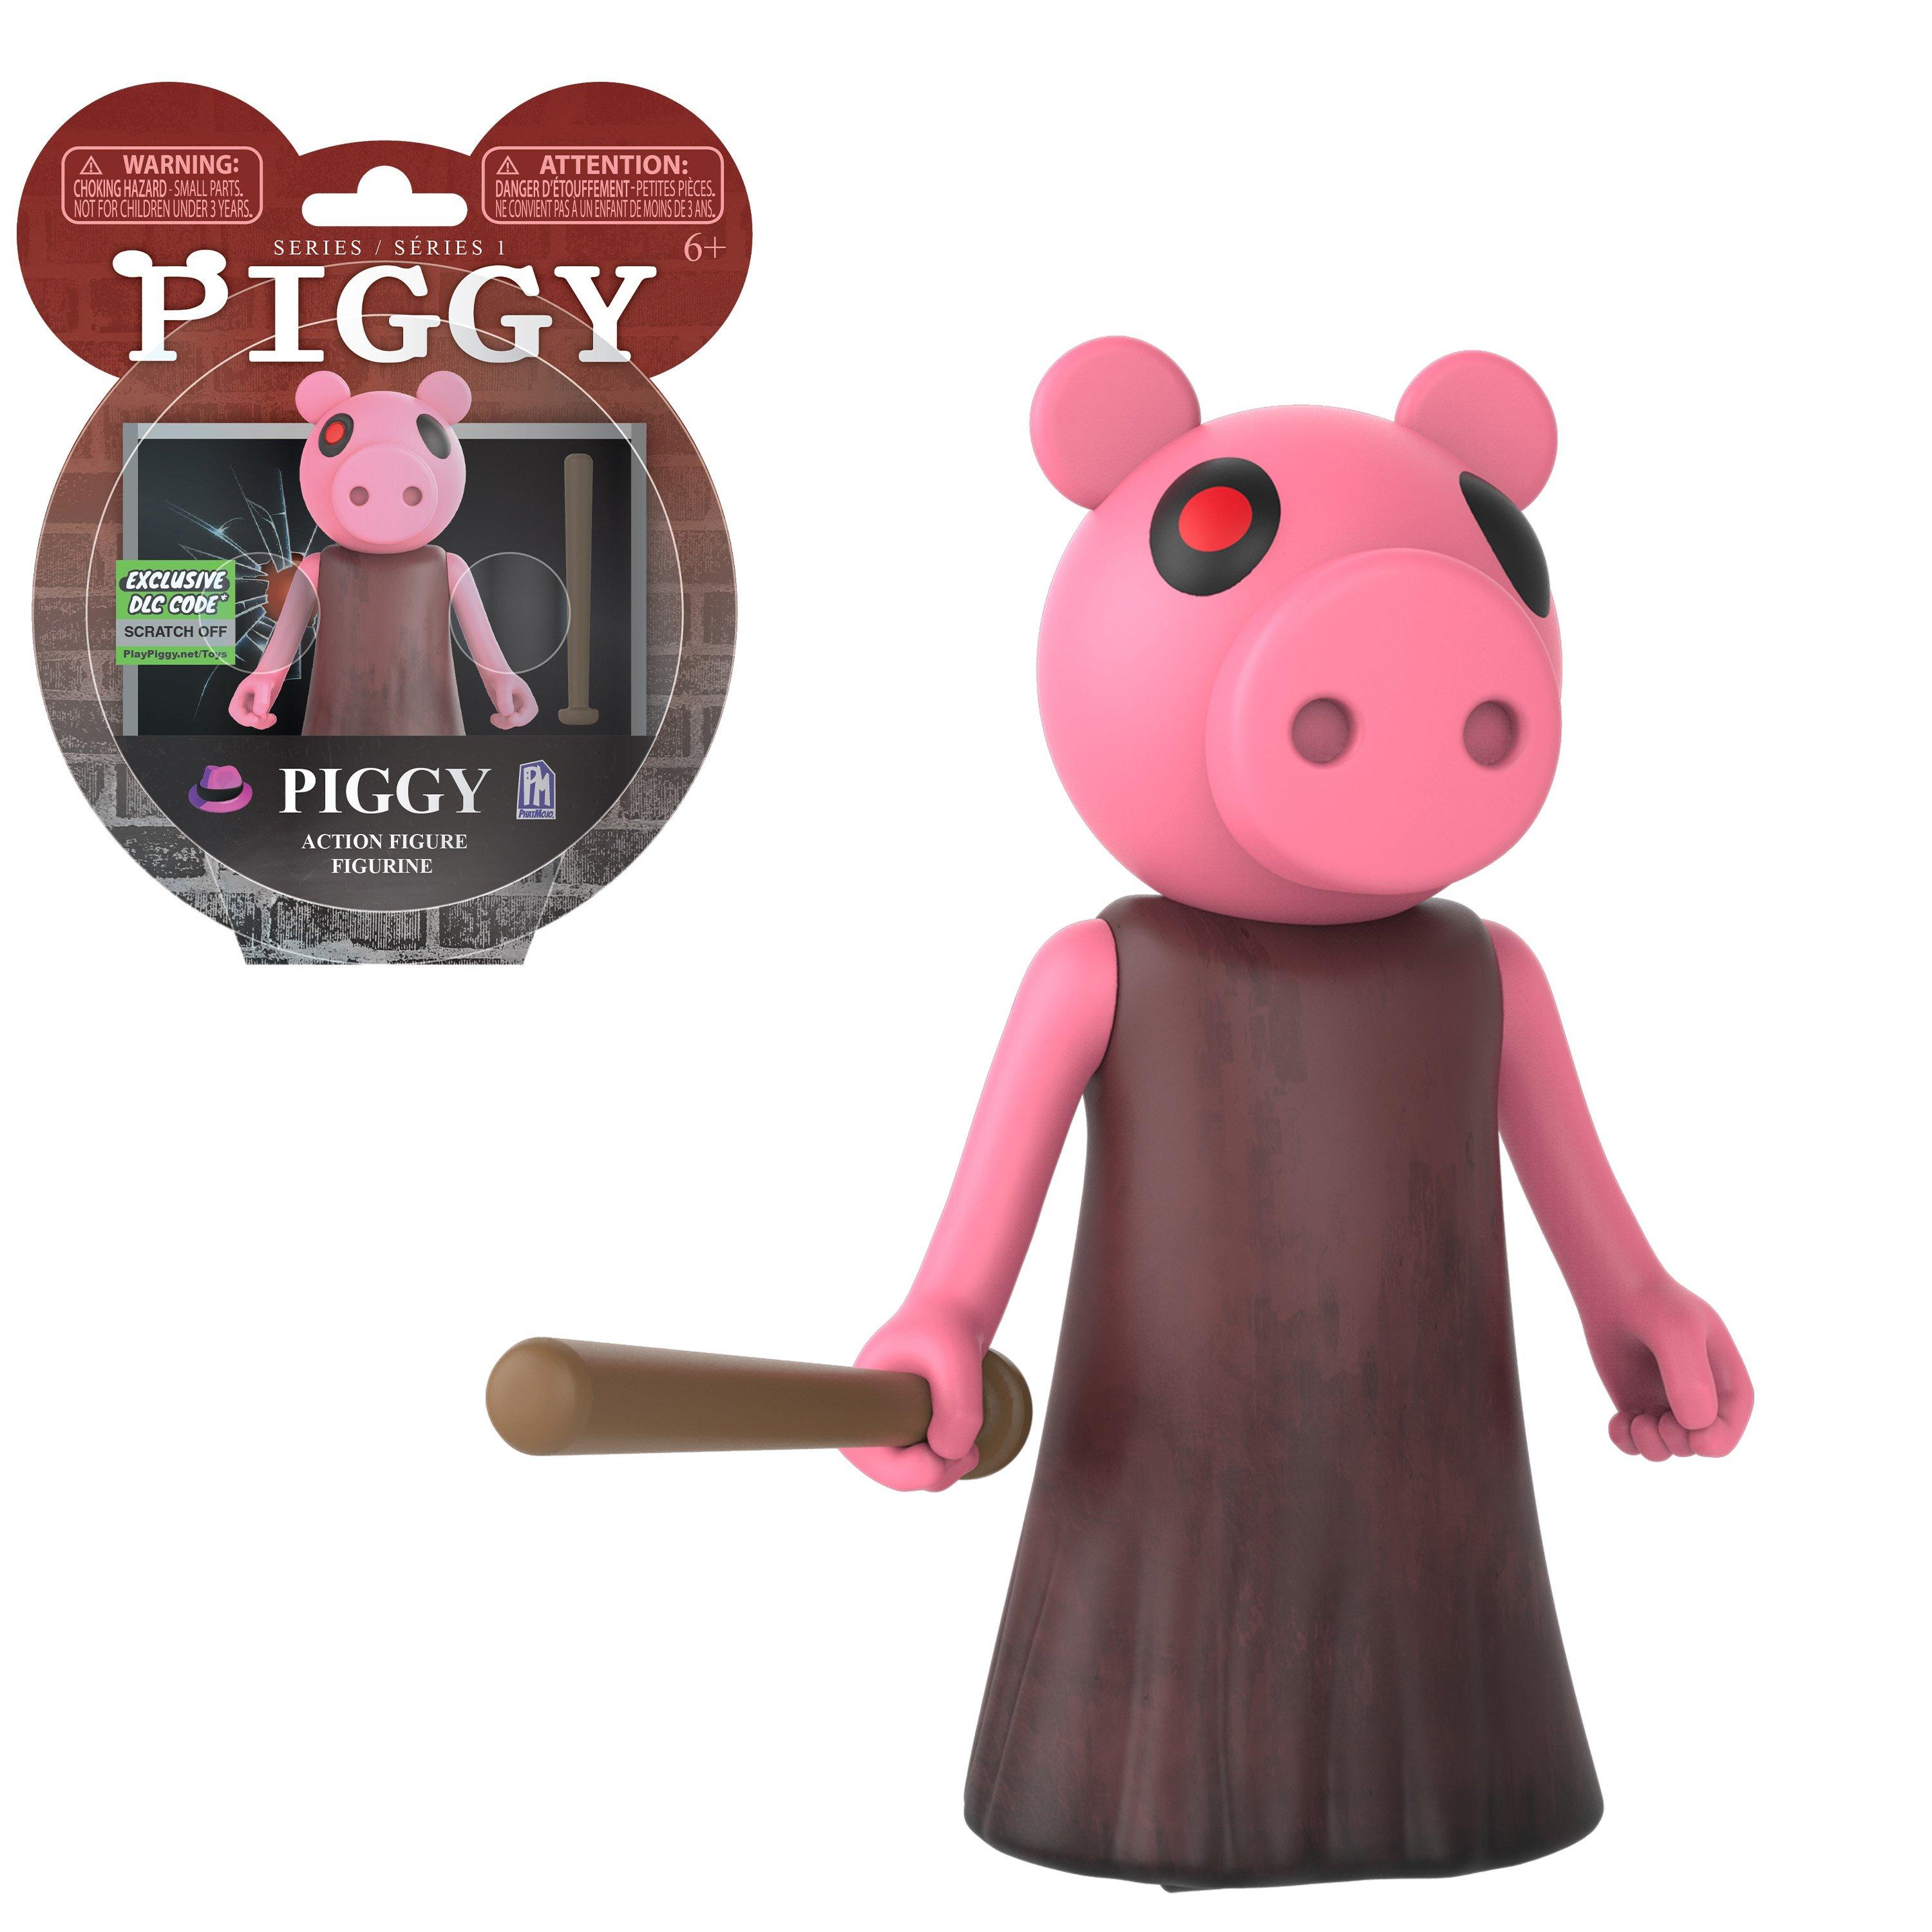 Piggy Piggy Series 1 Action Figure Gamestop - roblox action figures for sale